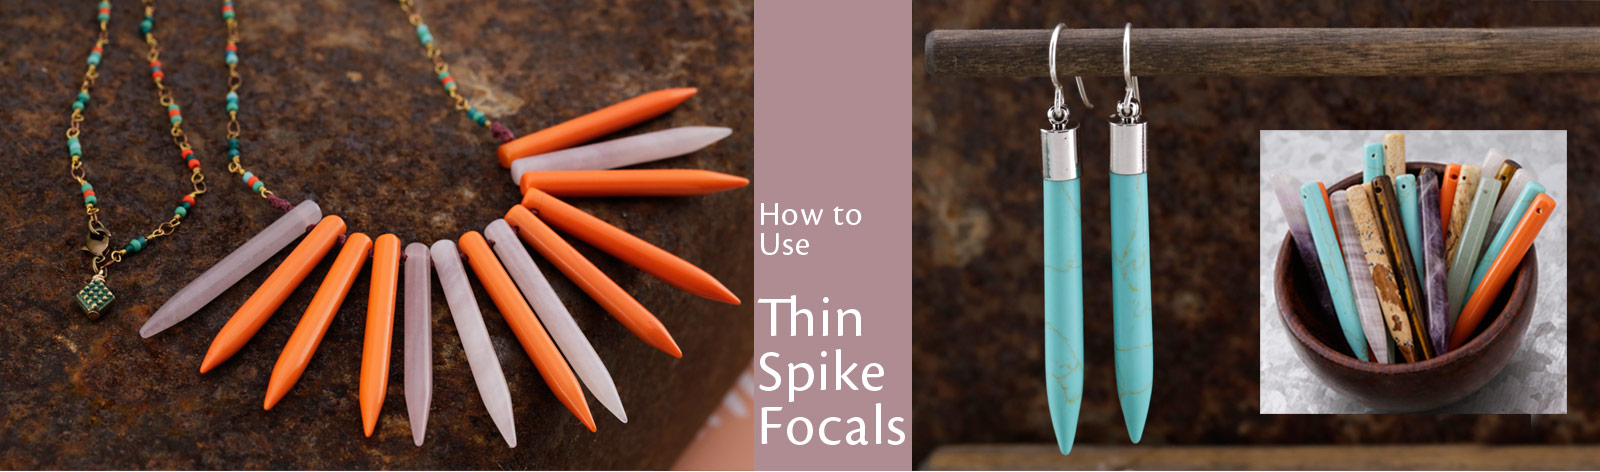 Thin Spike Focals